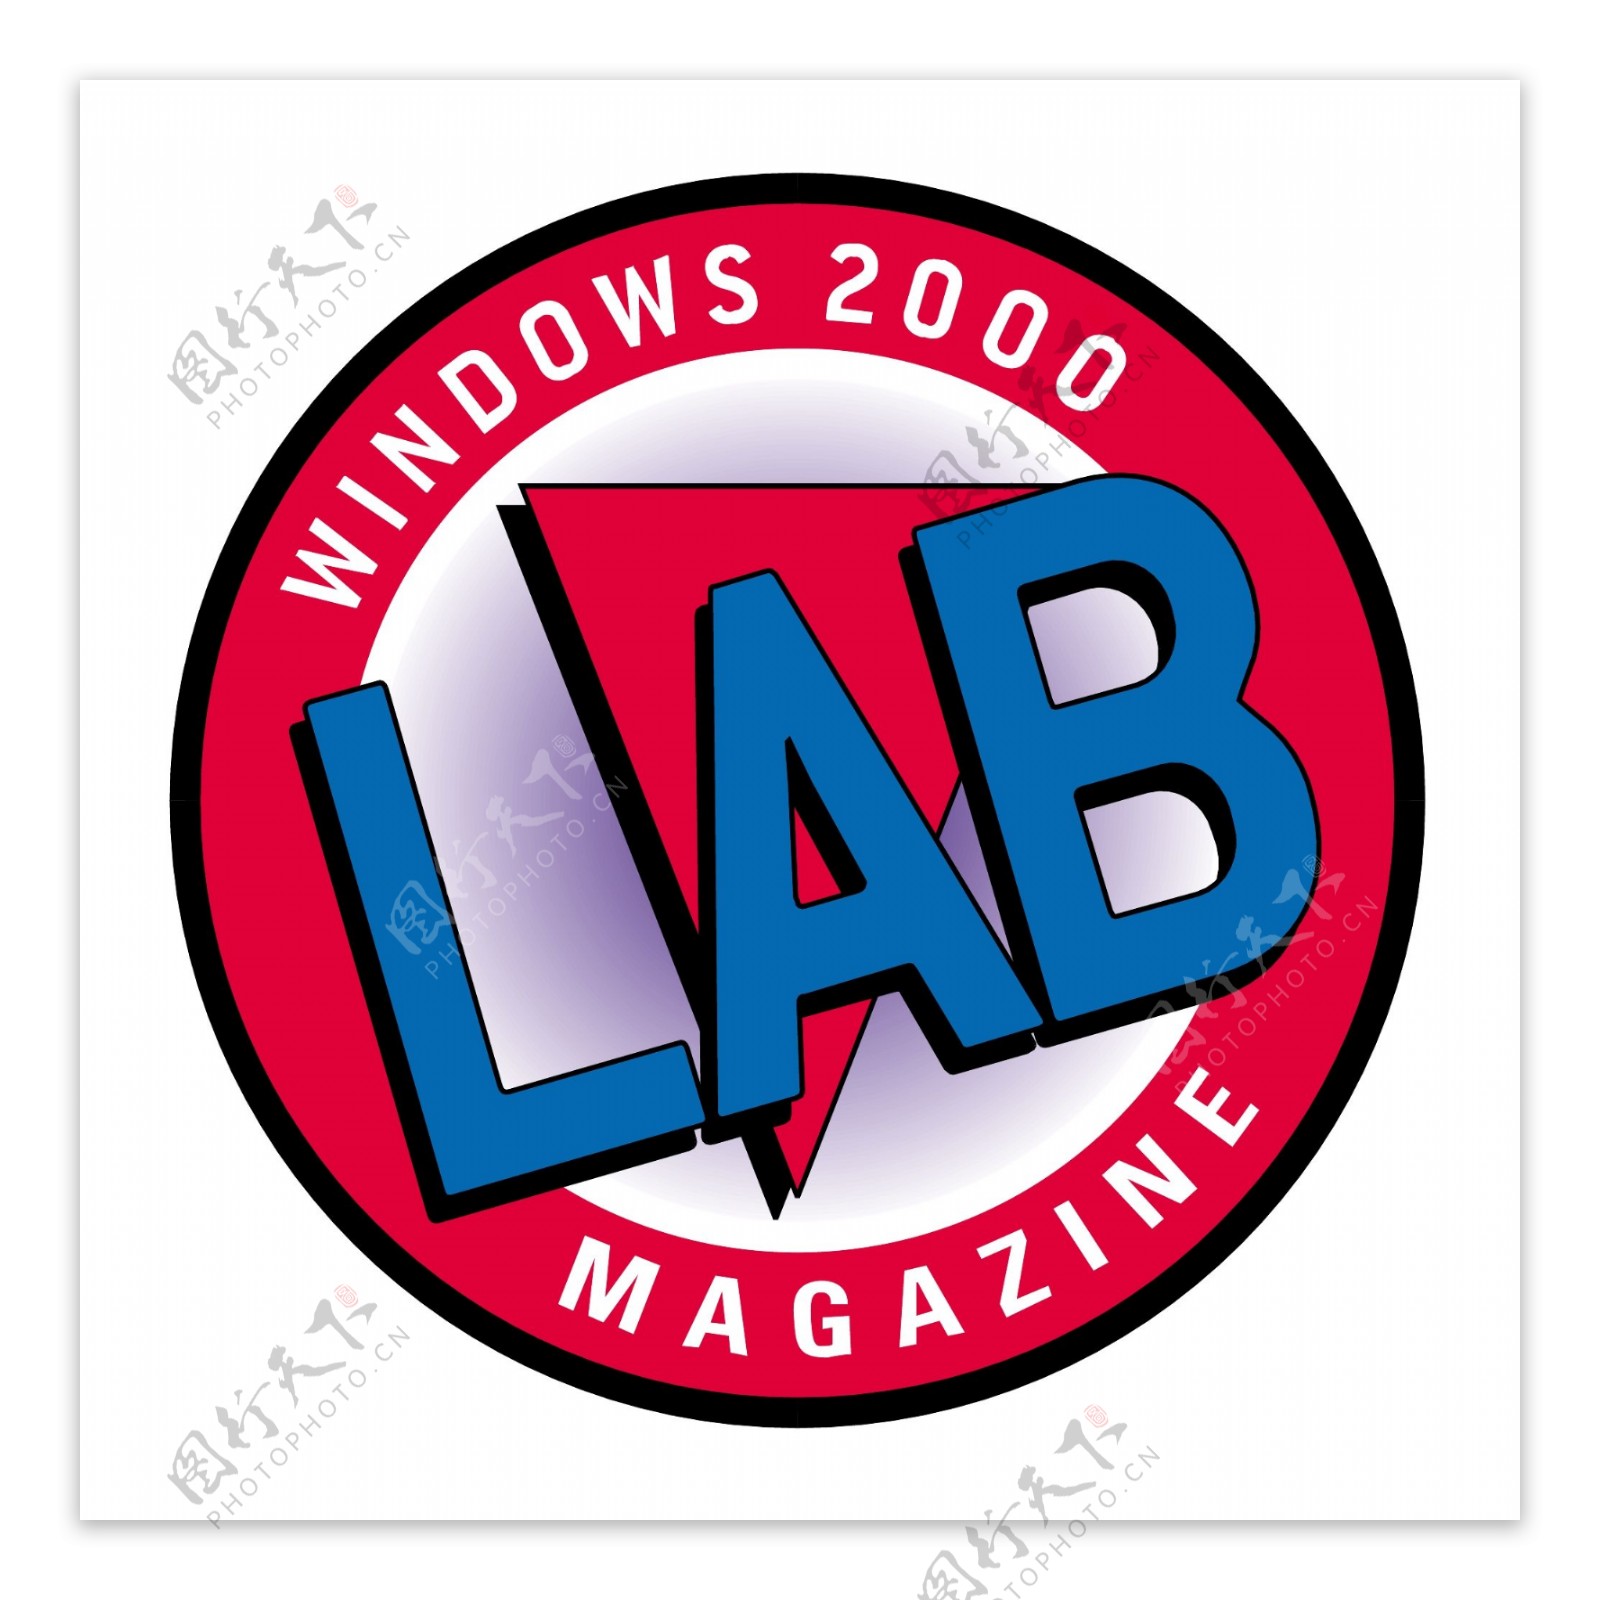 Windows2000杂志的实验室